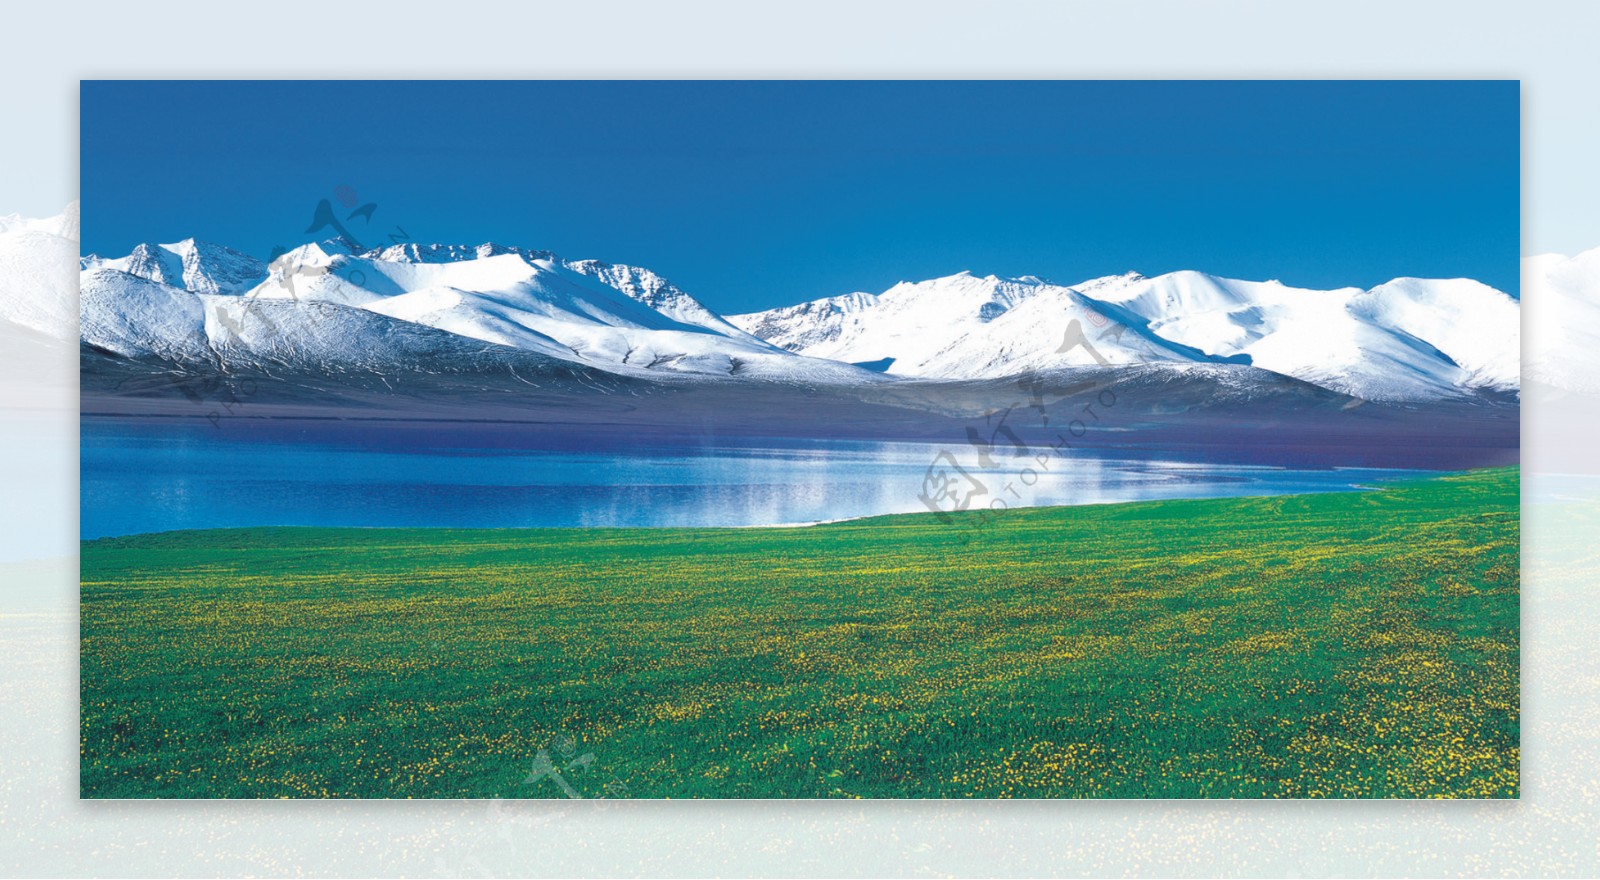 新疆雪山草地图片